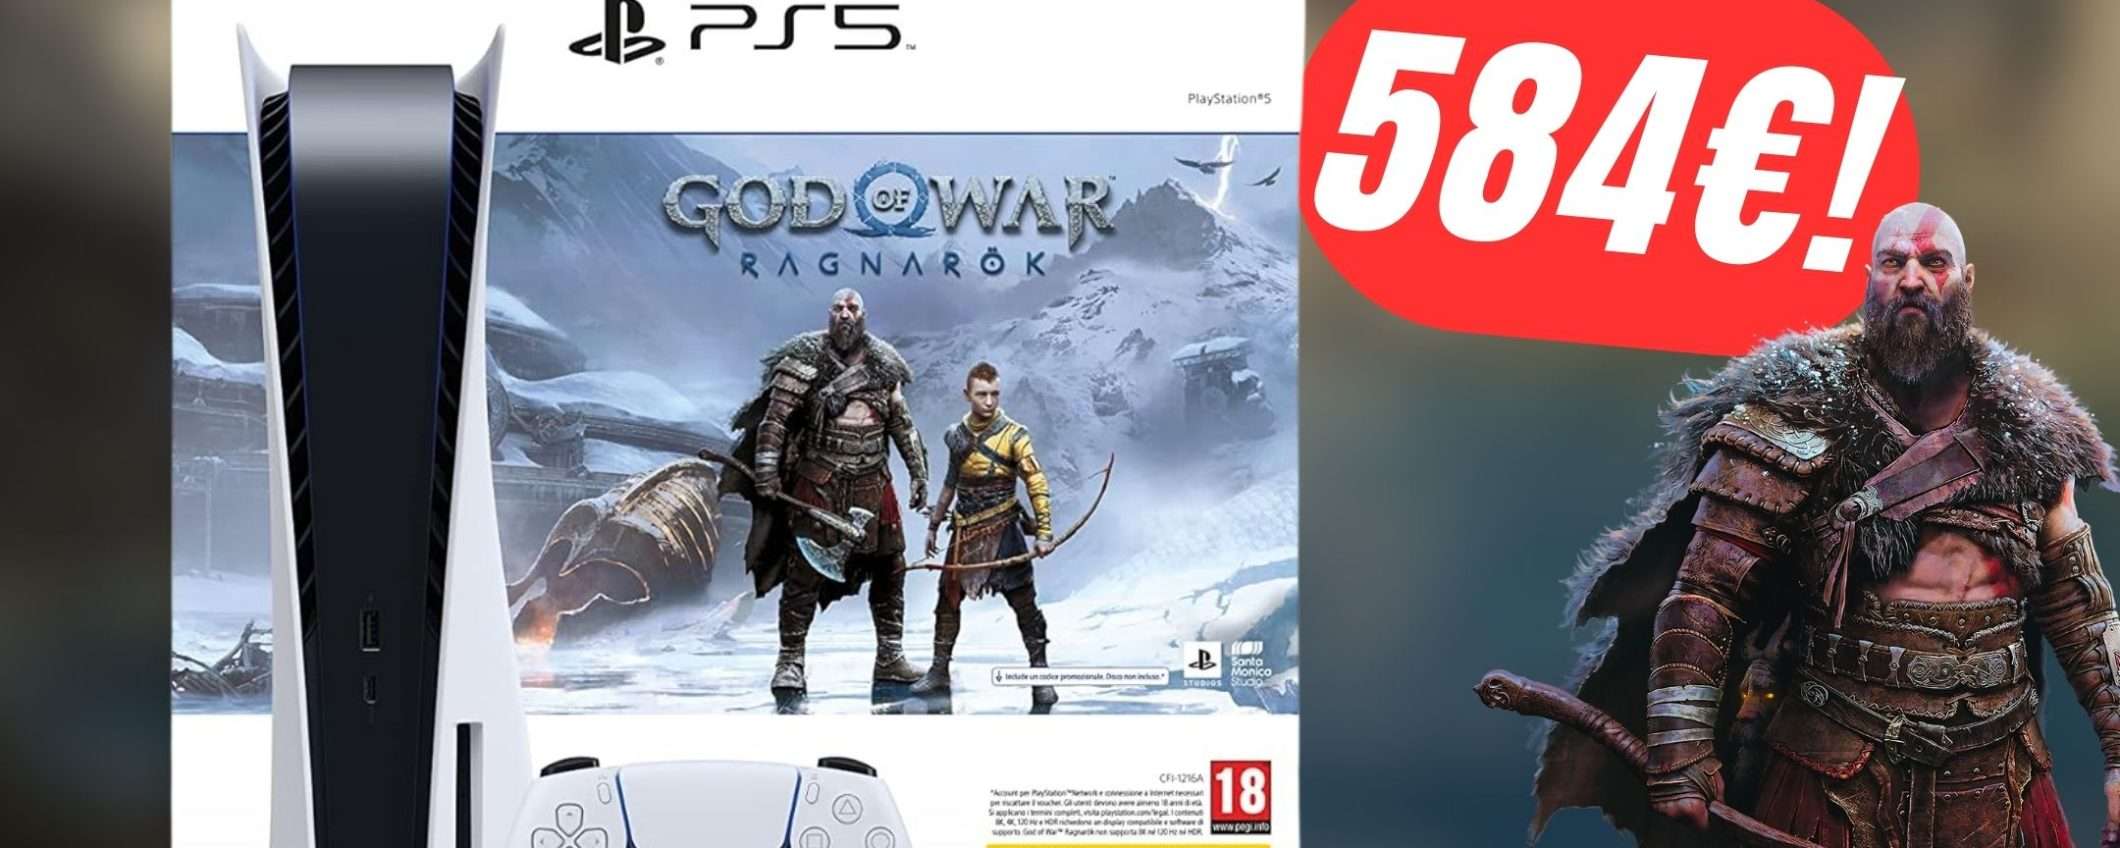 Risparmia sul bundle PlayStation 5 + God of War Ragnarök con questo SCONTO